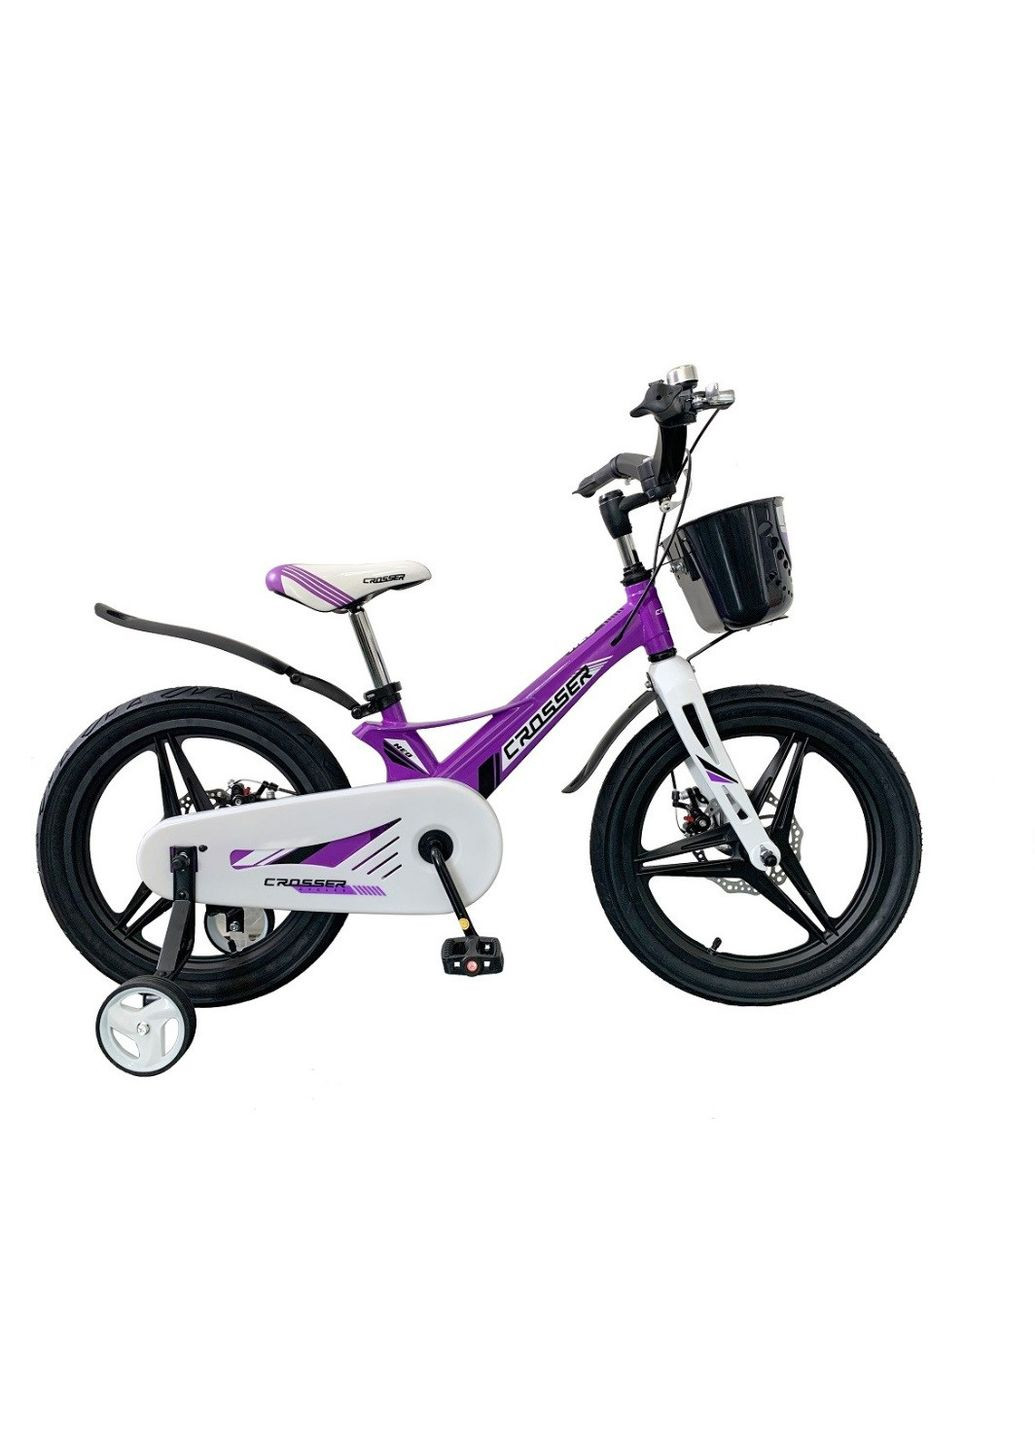 Детский велосипед HUNTER NEO Premium магниевый: стильный и надежный Фиолетовый, 14 Crosser (267810149)